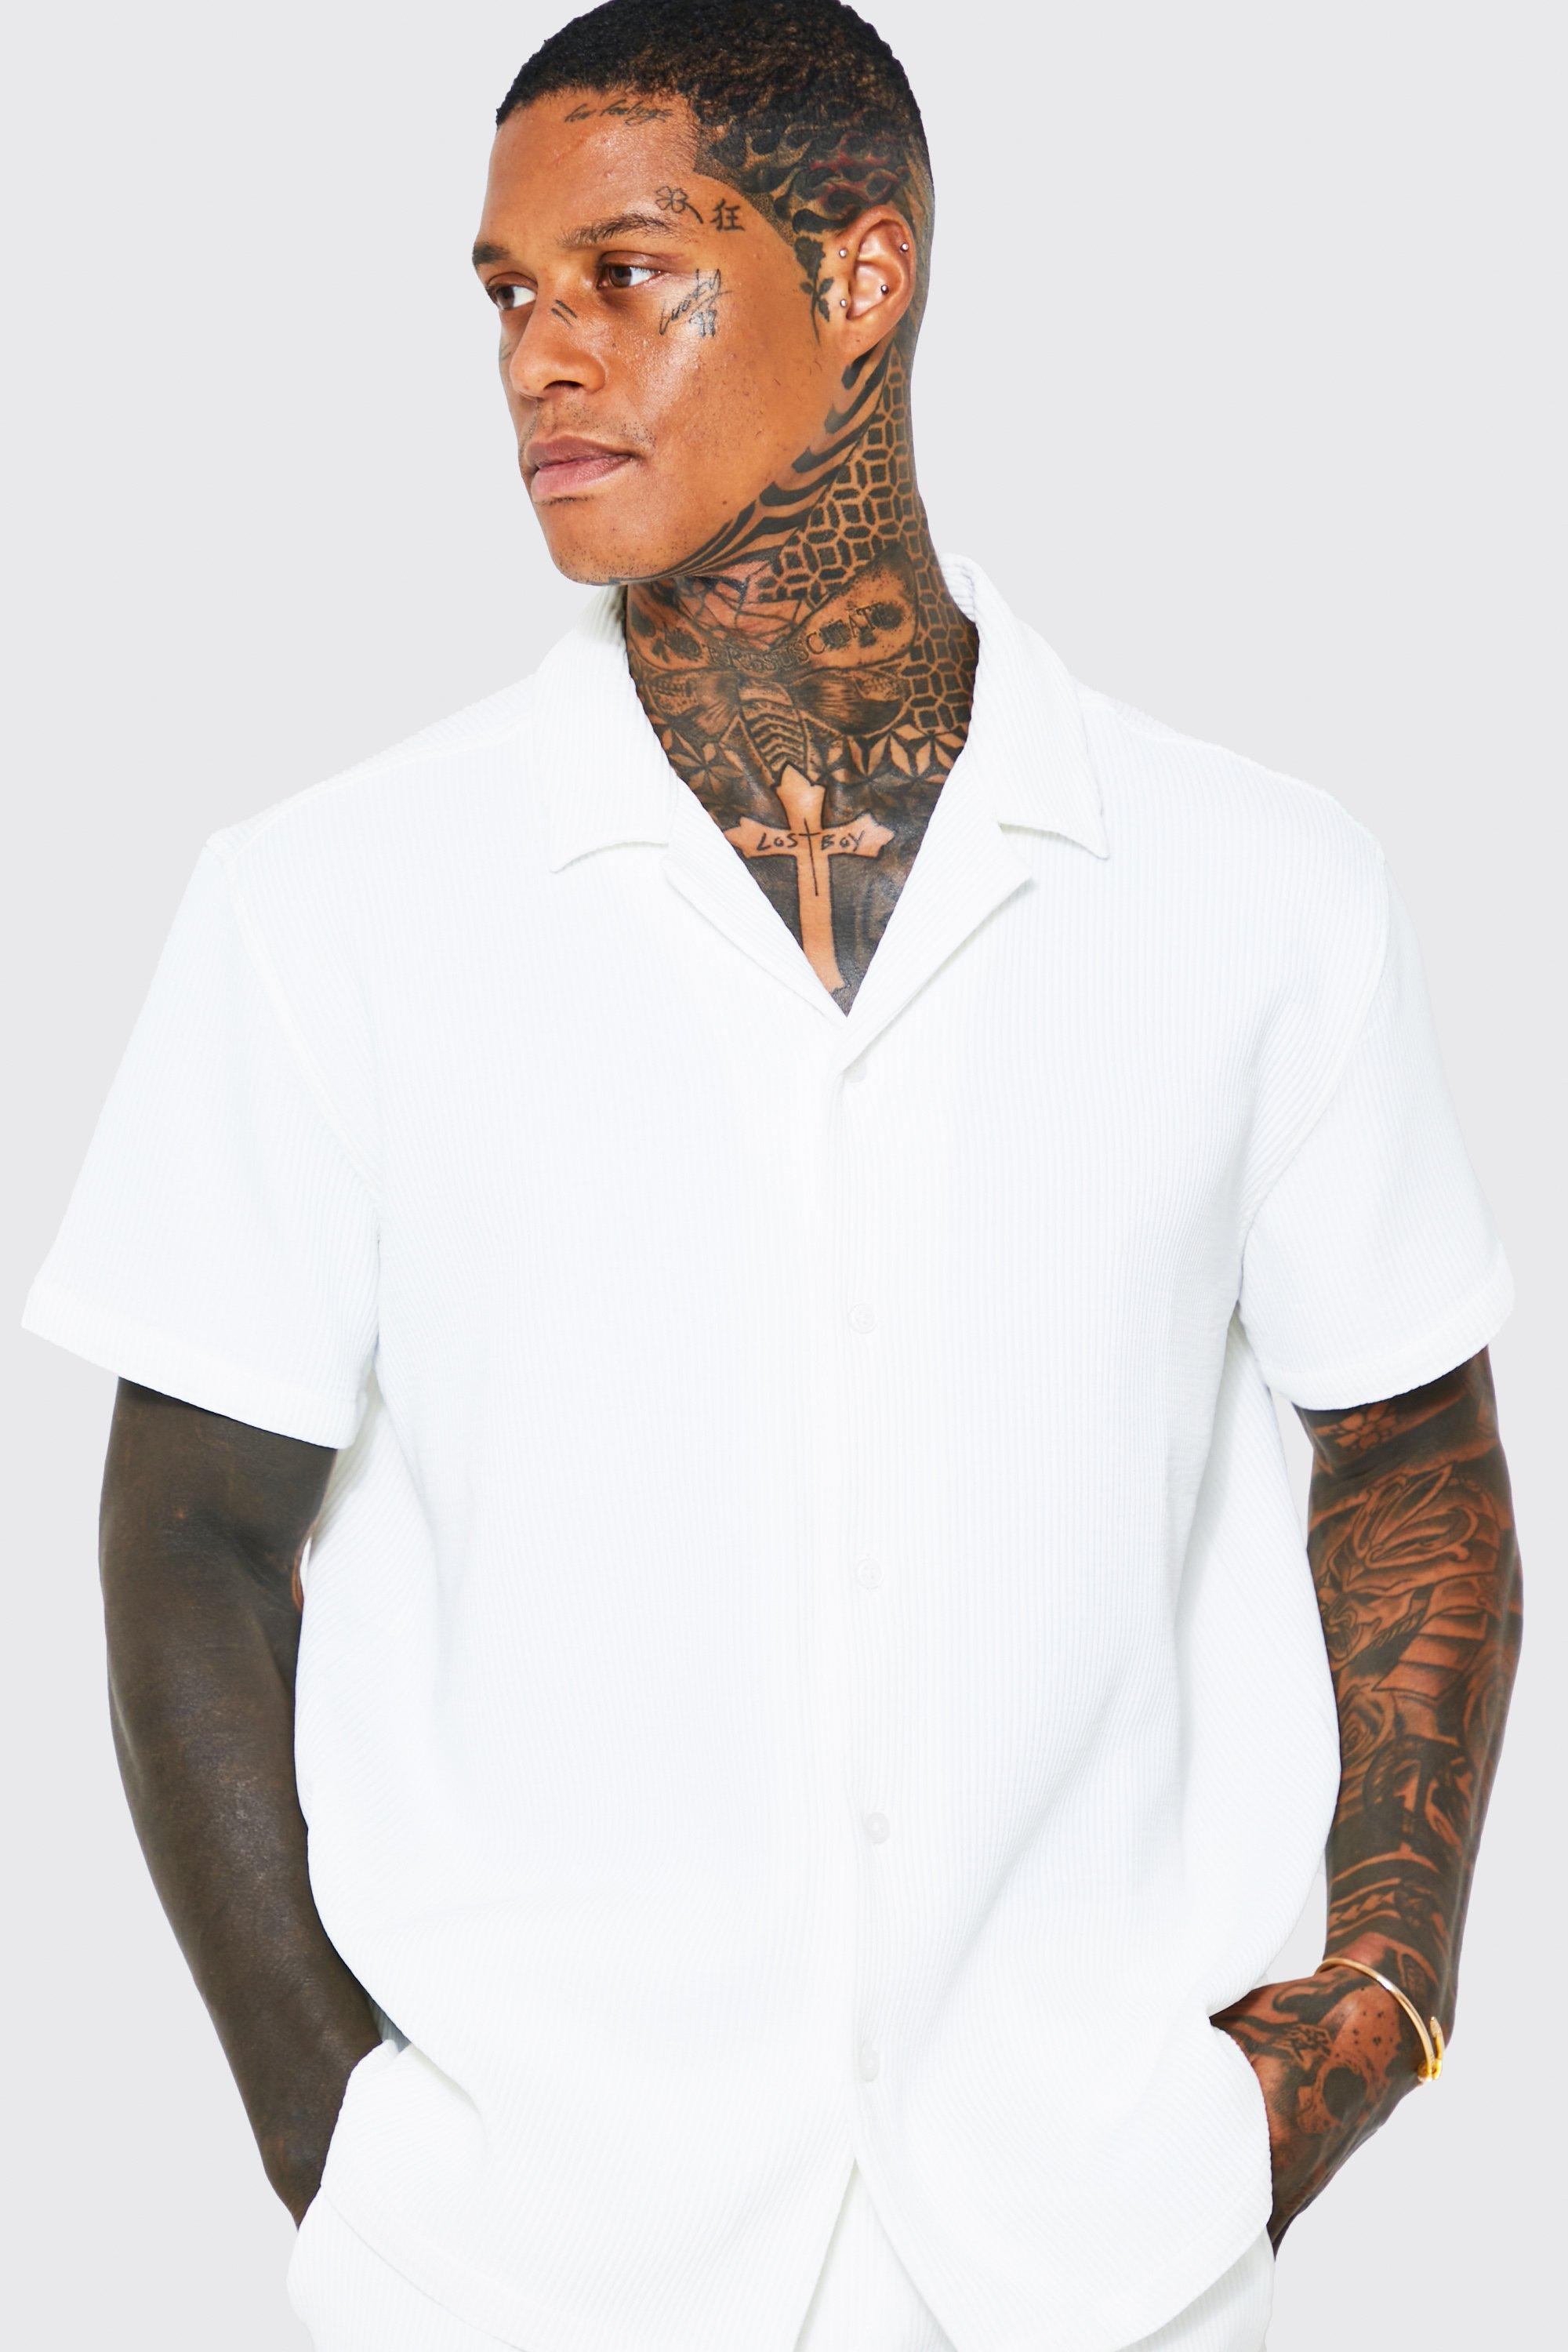 Oversized Short Sleeve Pleated Shirt And Short